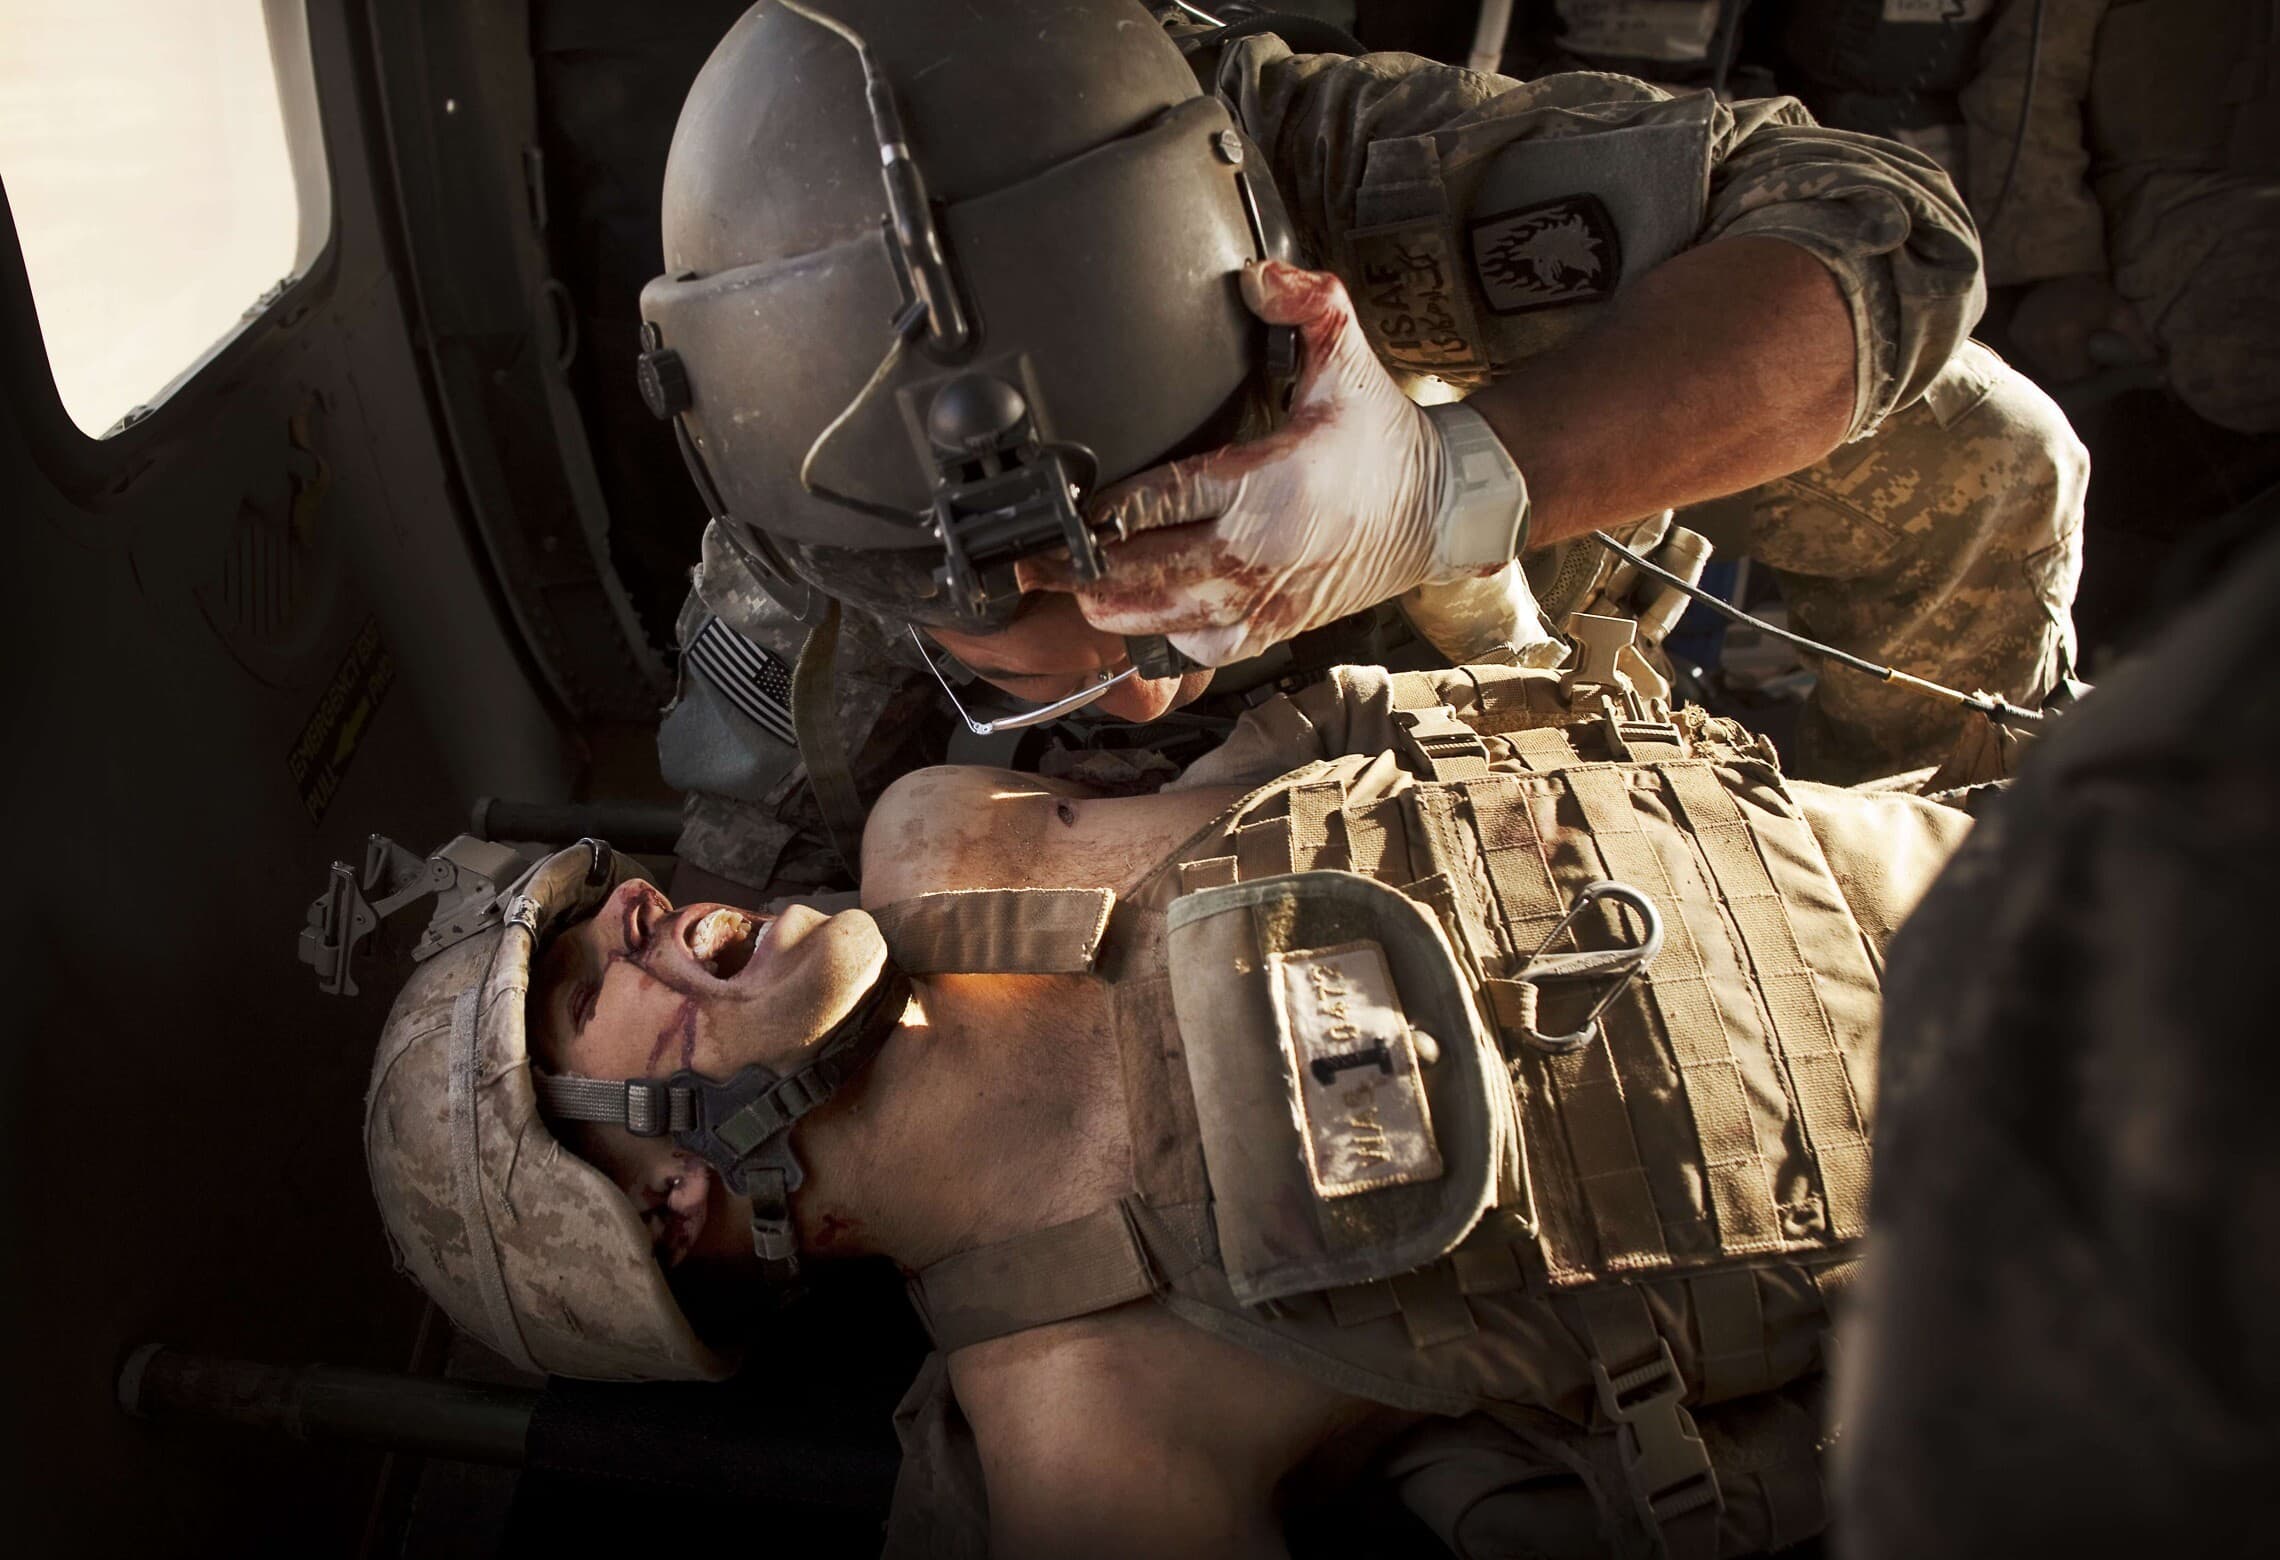 חובש צבאי מטפל בחייל מארינס שנפצע קשה בלחימה באפגניסטן, 15 במאי 2011 (צילום: AP Photo/Kevin Frayer)